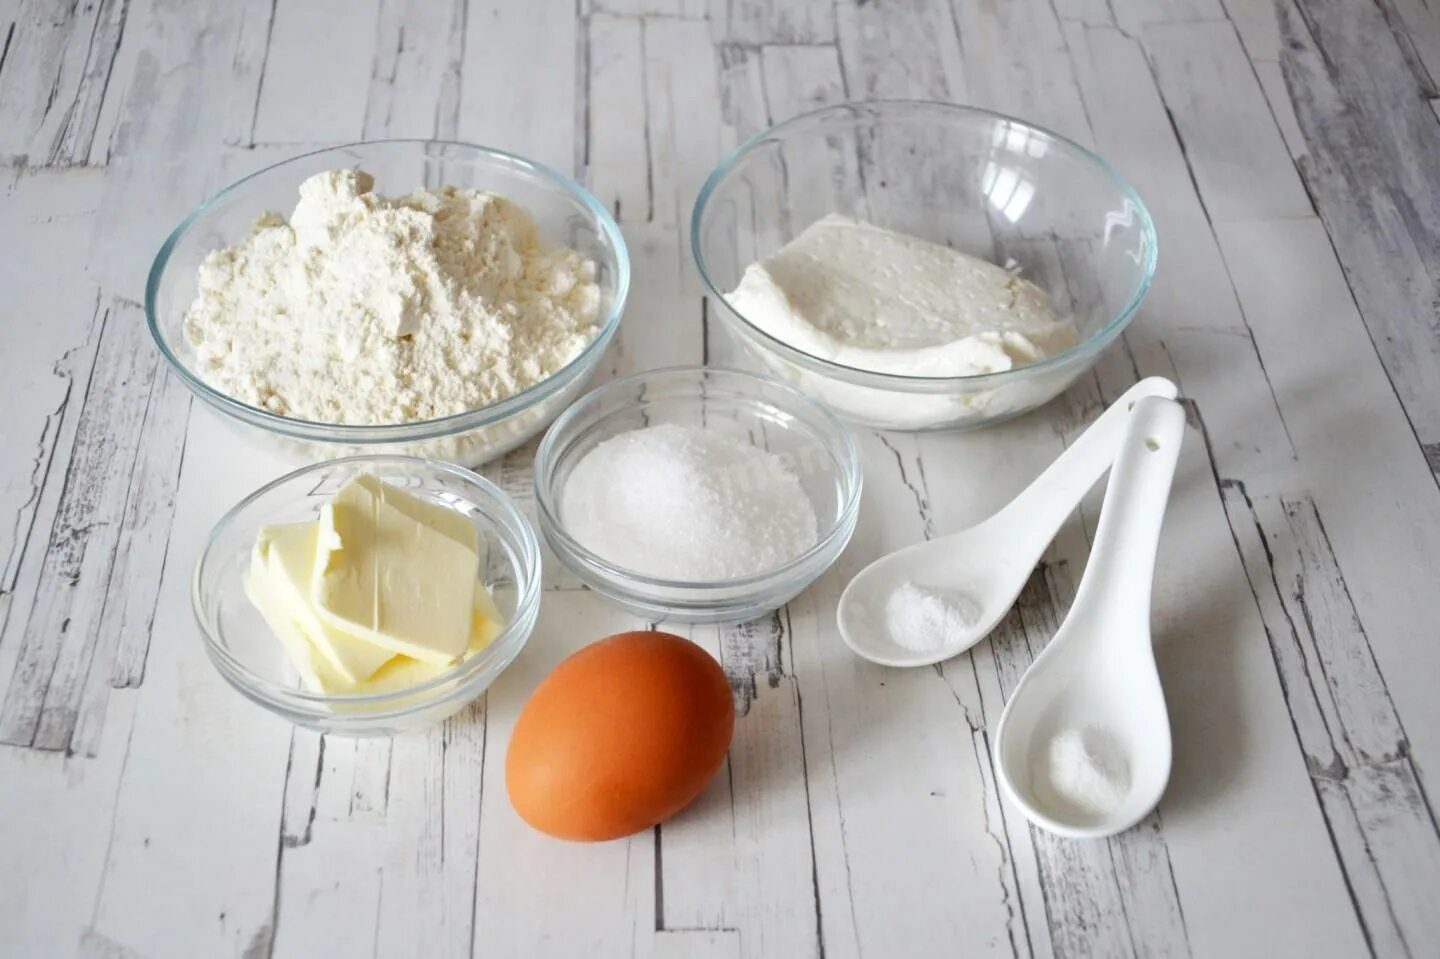 Мука сахар яйцо масло что приготовить. Творог яйца мука сахар. Мука яйца сахар. Творог с яйцом. Ингредиенты для теста.